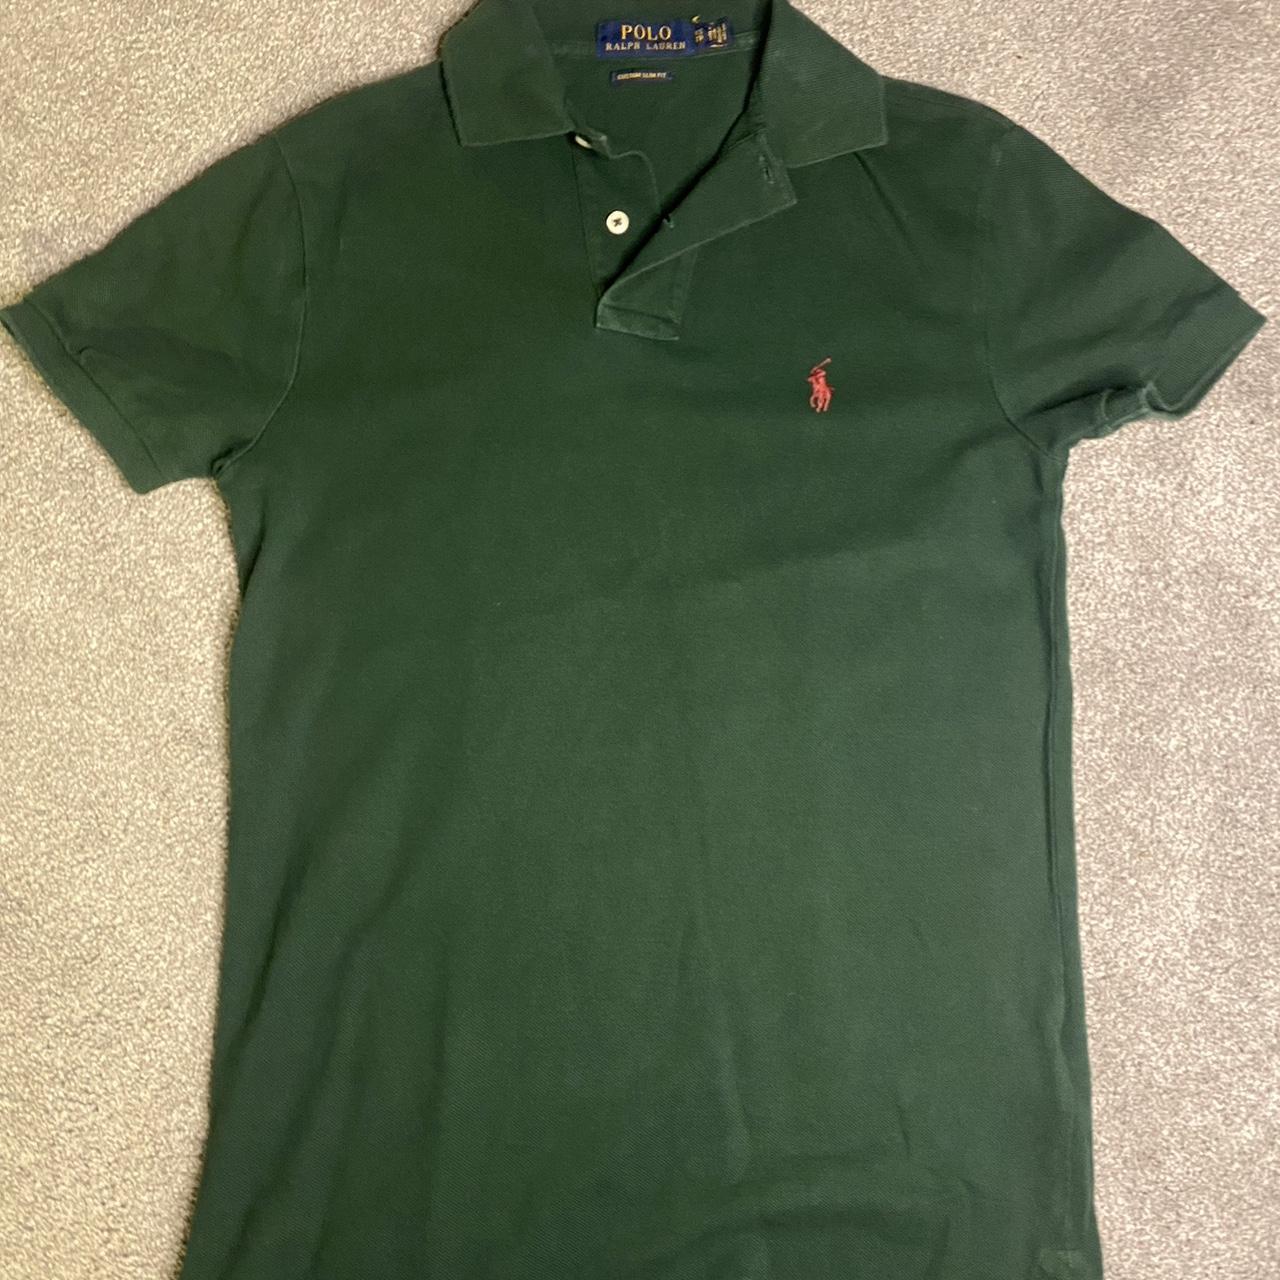 Green Ralph lauren polo shirt Barely worn - Depop